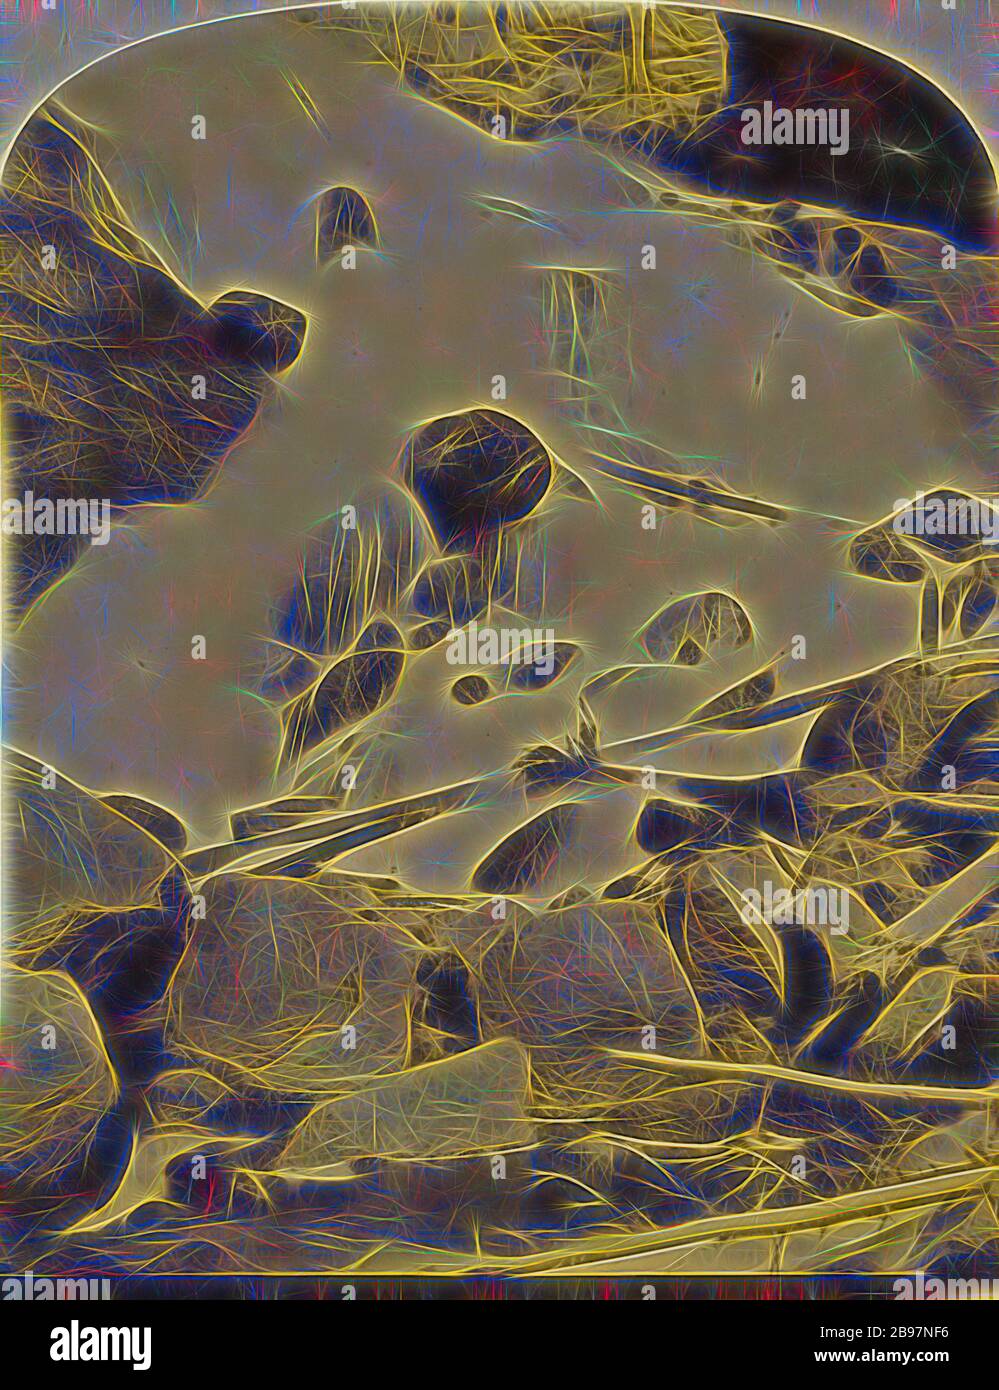 Cascada del Gibbon. Yellowstone National Park., Frank Jay Haynes (Americano, 1853 - 1921), cerca de 1876, estampado de plata de albumen, Reimaged by Gibon, diseño de cálido y alegre resplandor de brillo y rayos de luz. Arte clásico reinventado con un toque moderno. Fotografía inspirada en el futurismo, abrazando la energía dinámica de la tecnología moderna, el movimiento, la velocidad y la revolución de la cultura. Foto de stock